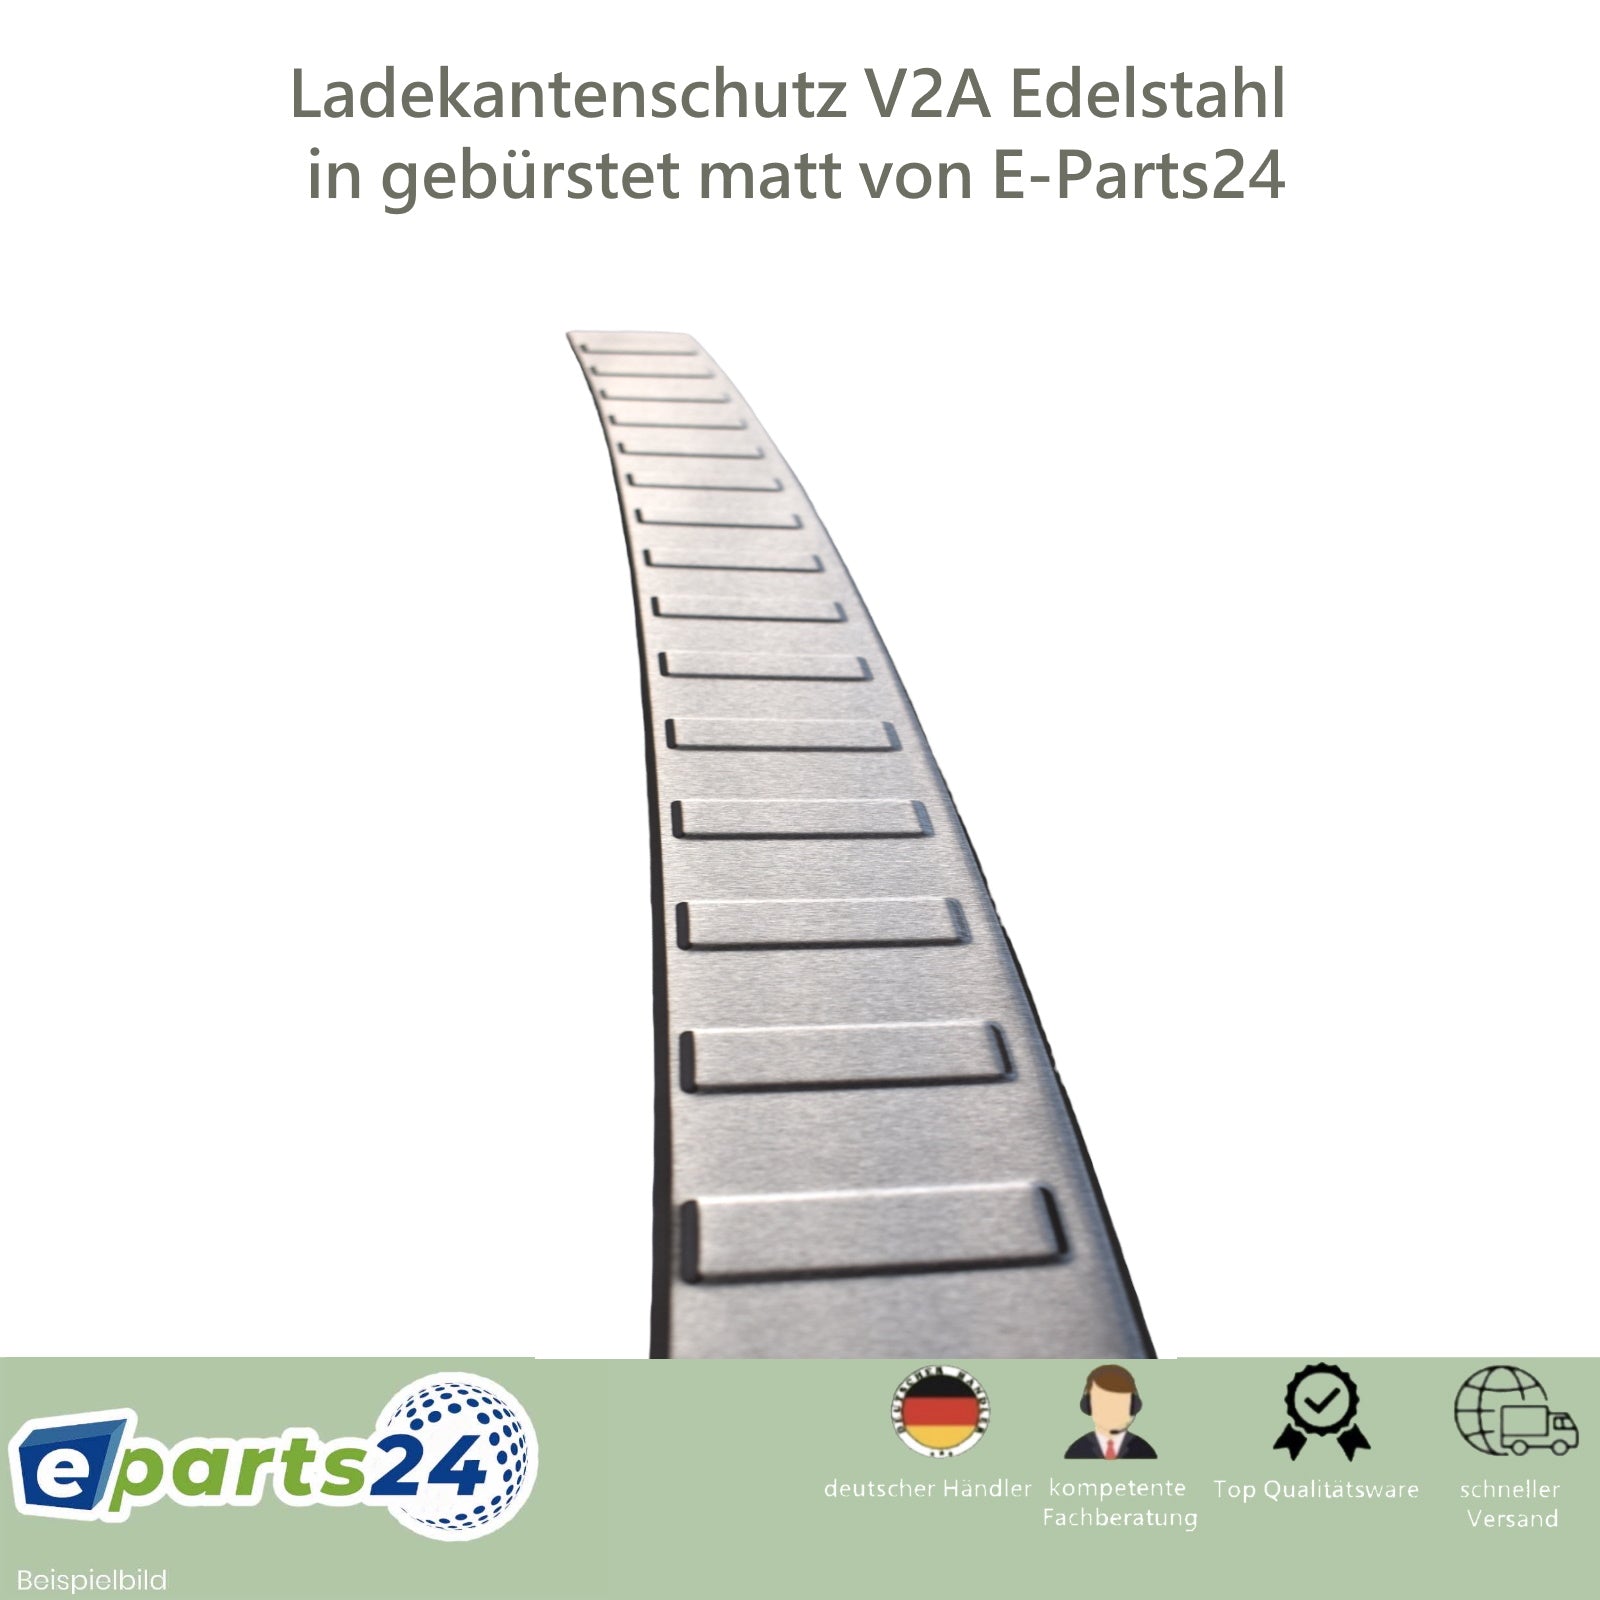 Ladekantenschutz Heckschutz für E-Parts24 Edelstahl 5 2020- gebürstet VW V Abkantung mit Caddy ab